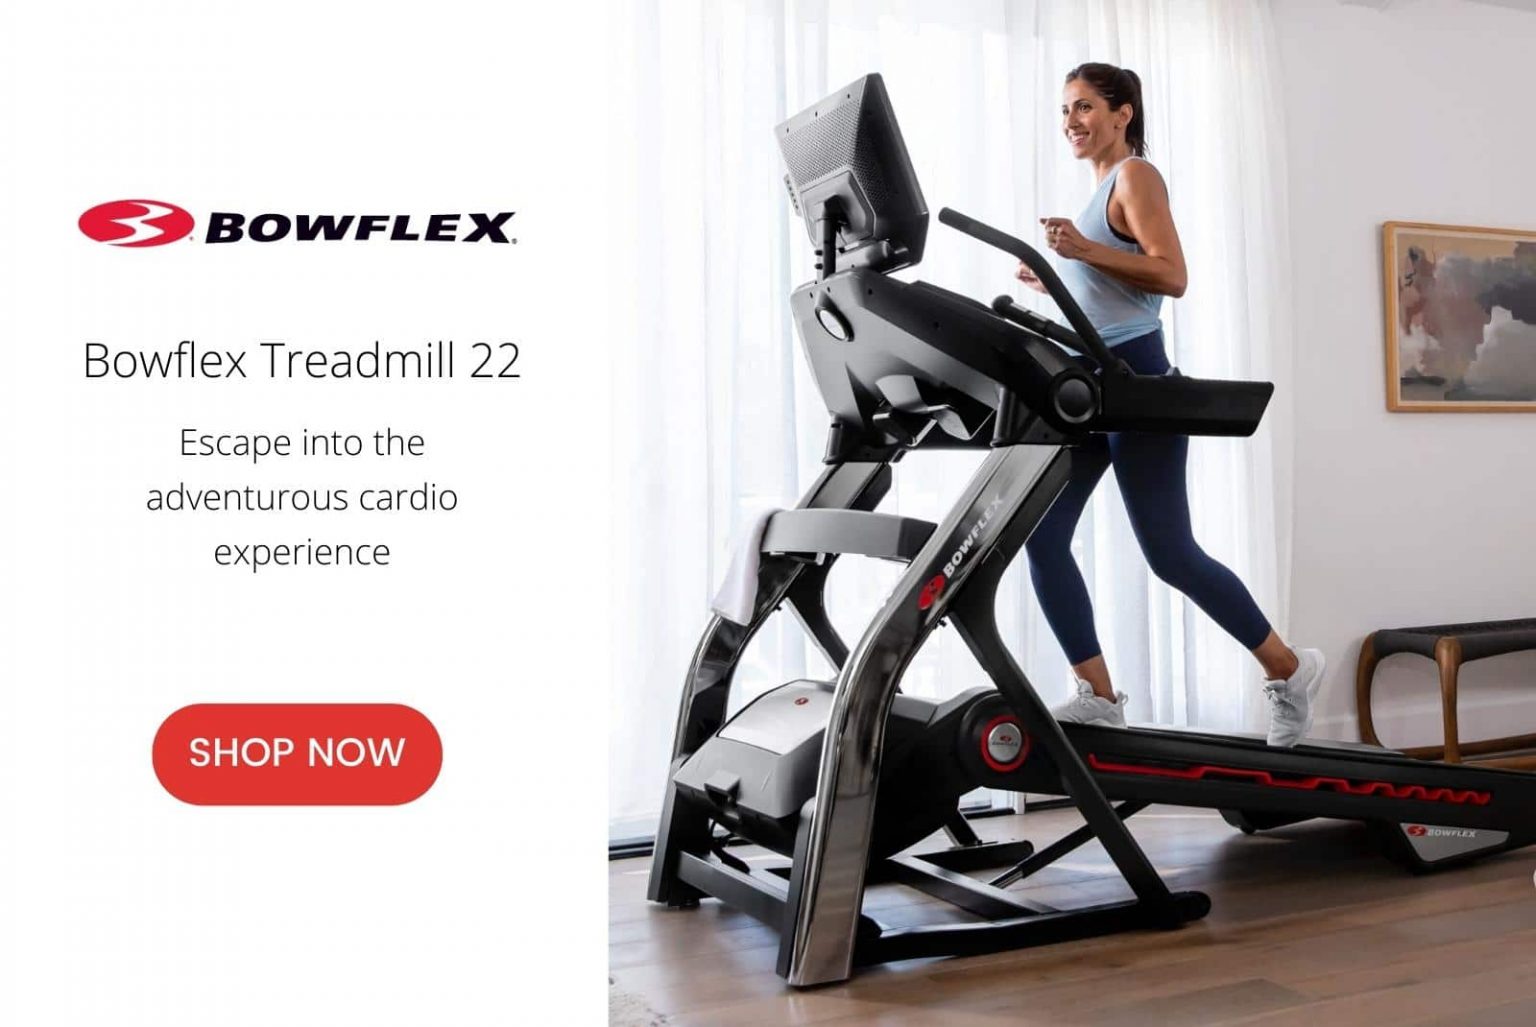 Bowflex treadmill 22